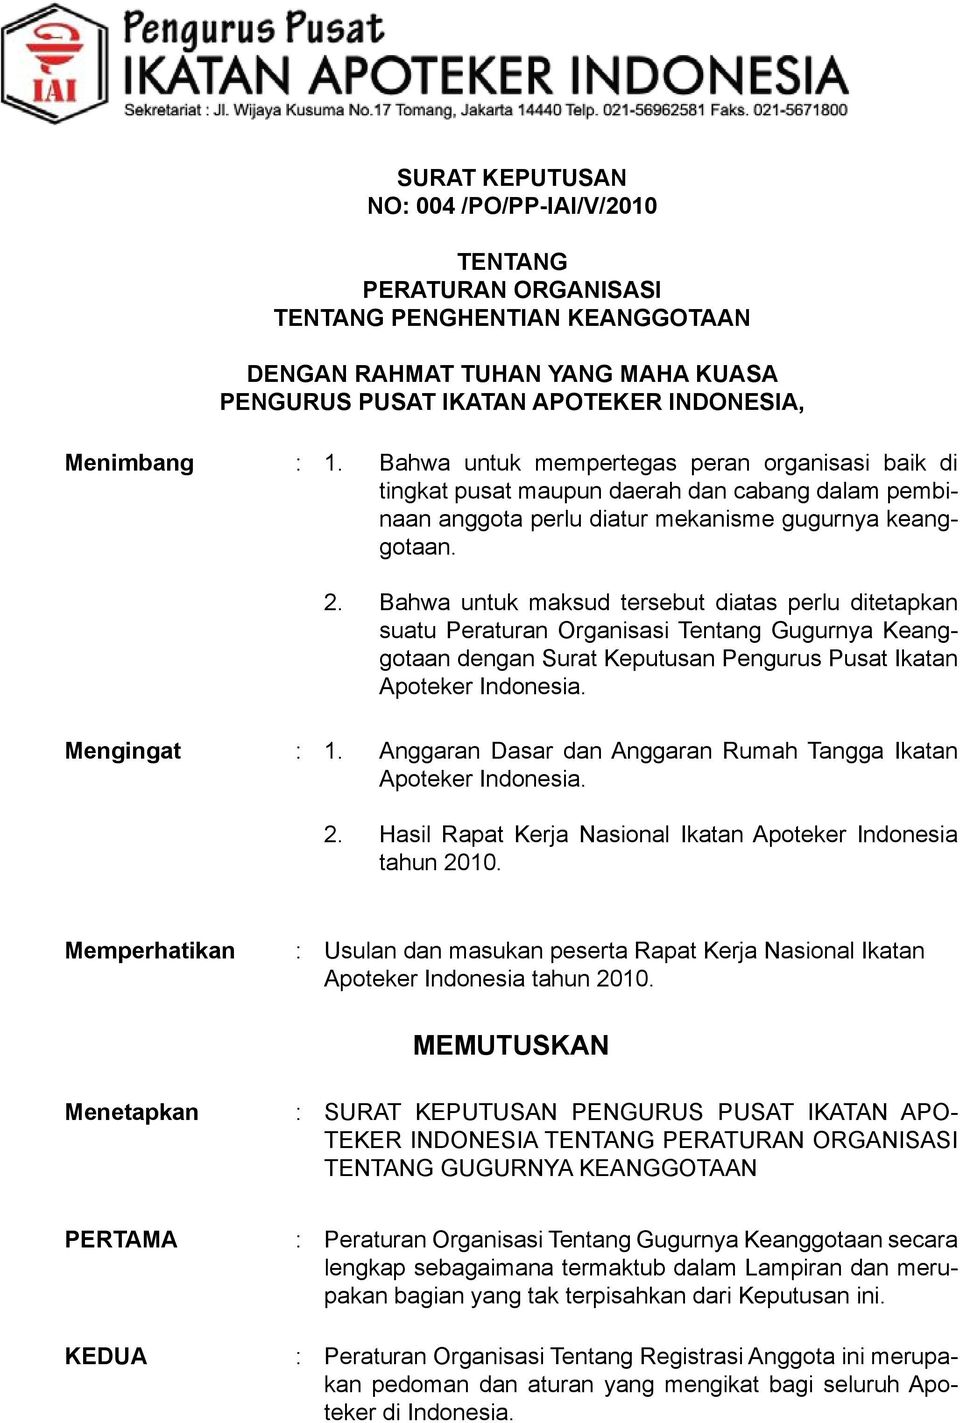 Bahwa untuk maksud tersebut diatas perlu ditetapkan suatu Peraturan Organisasi Tentang Gugurnya Keanggotaan dengan Surat Keputusan Pengurus Pusat Ikatan Apoteker Indonesia. Mengingat : 1.